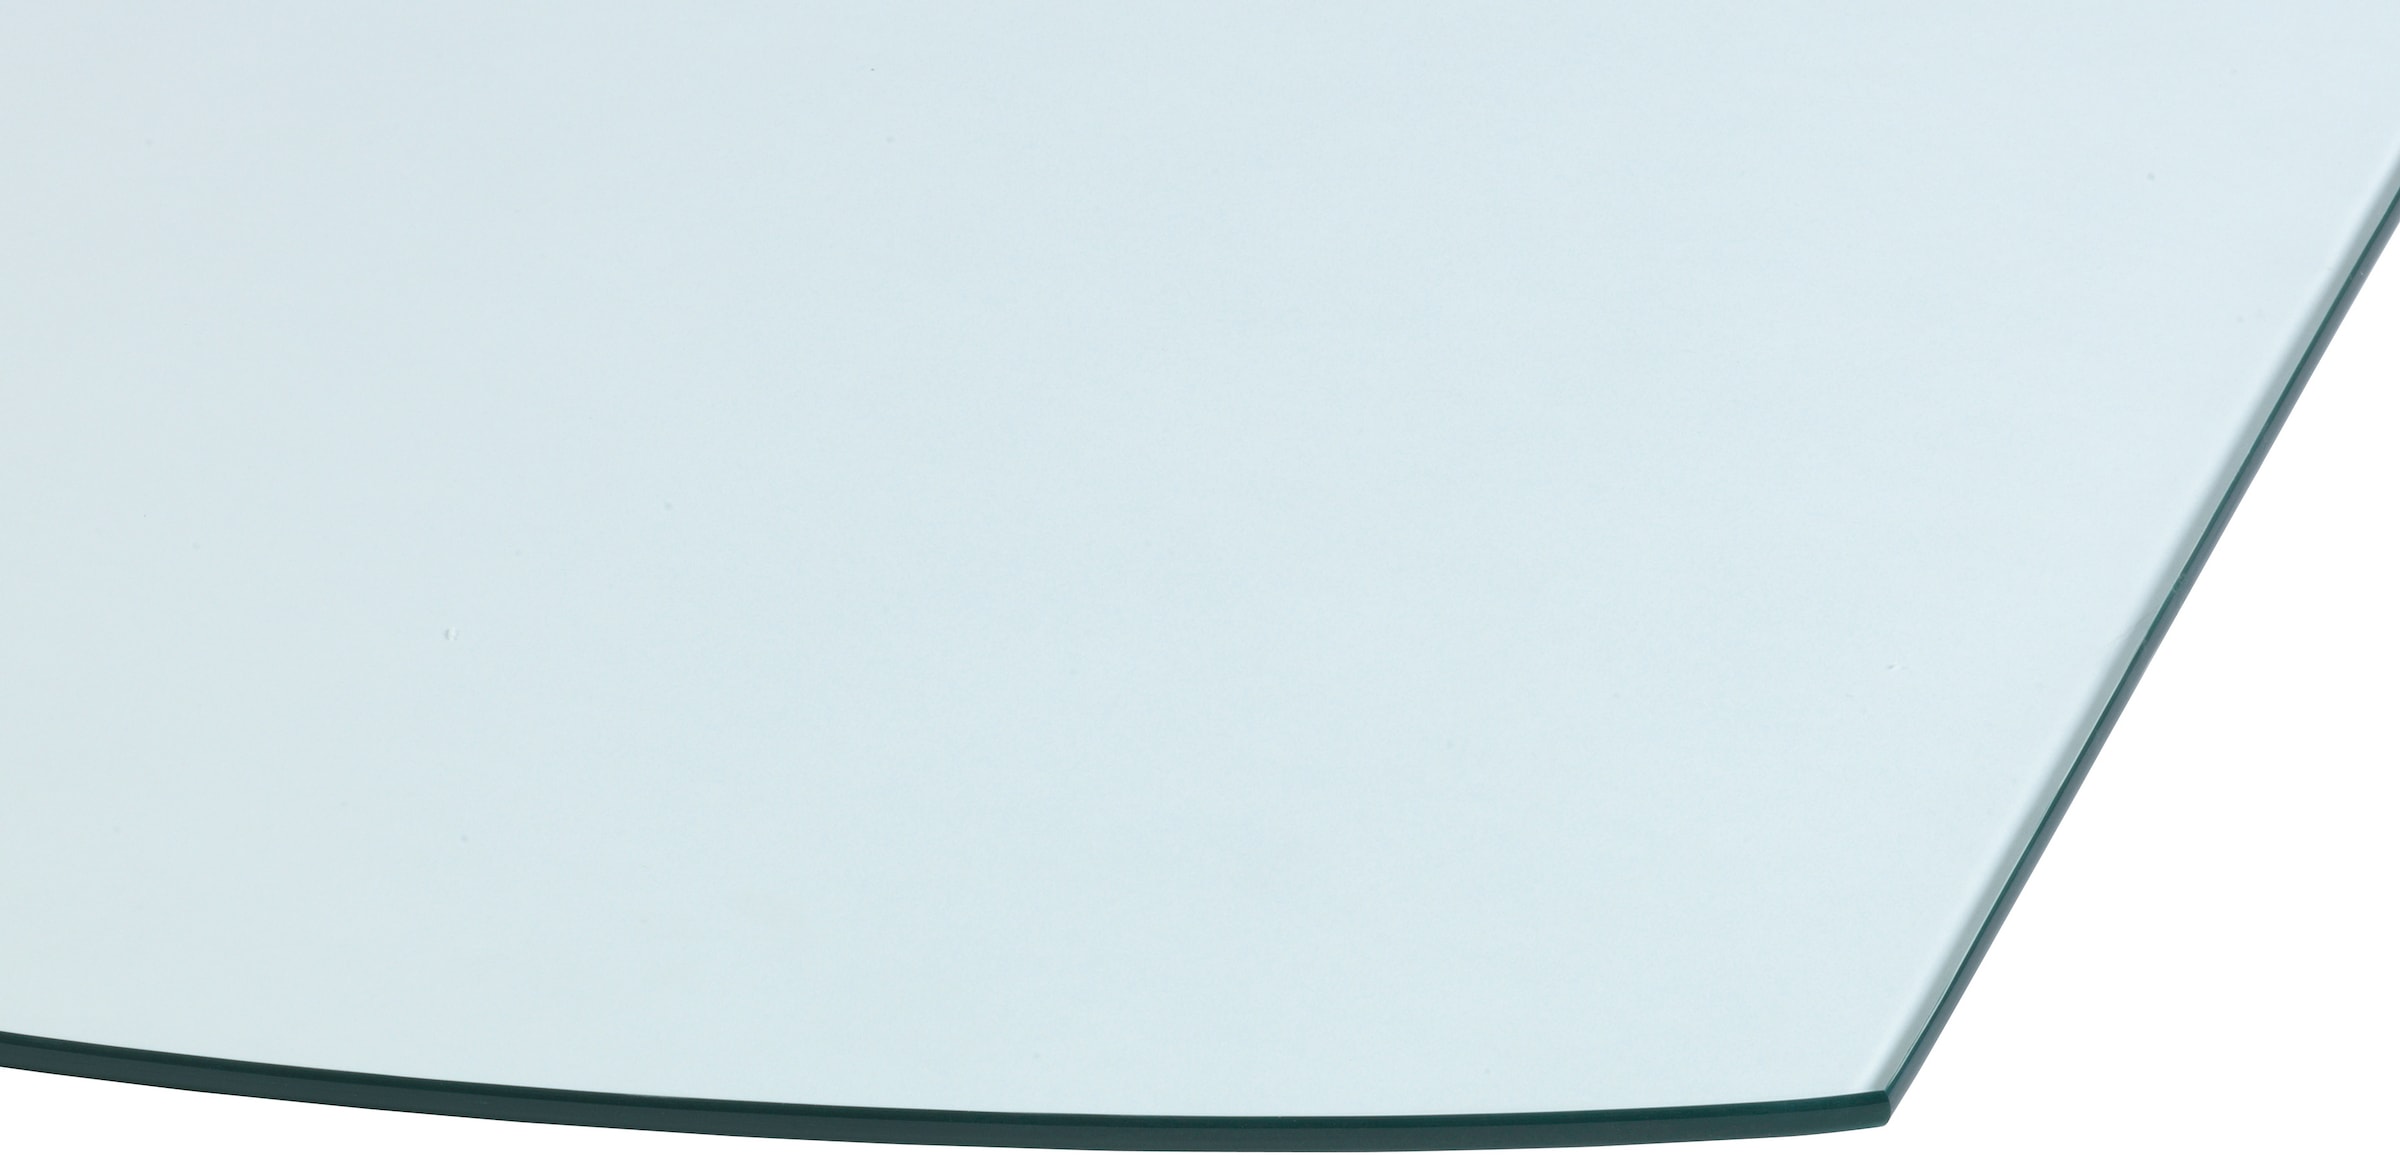 Heathus Bodenschutzplatte, Glas-Segment, 80 x 100 cm, 8mm Stärke, transparent, zum Funkenschutz